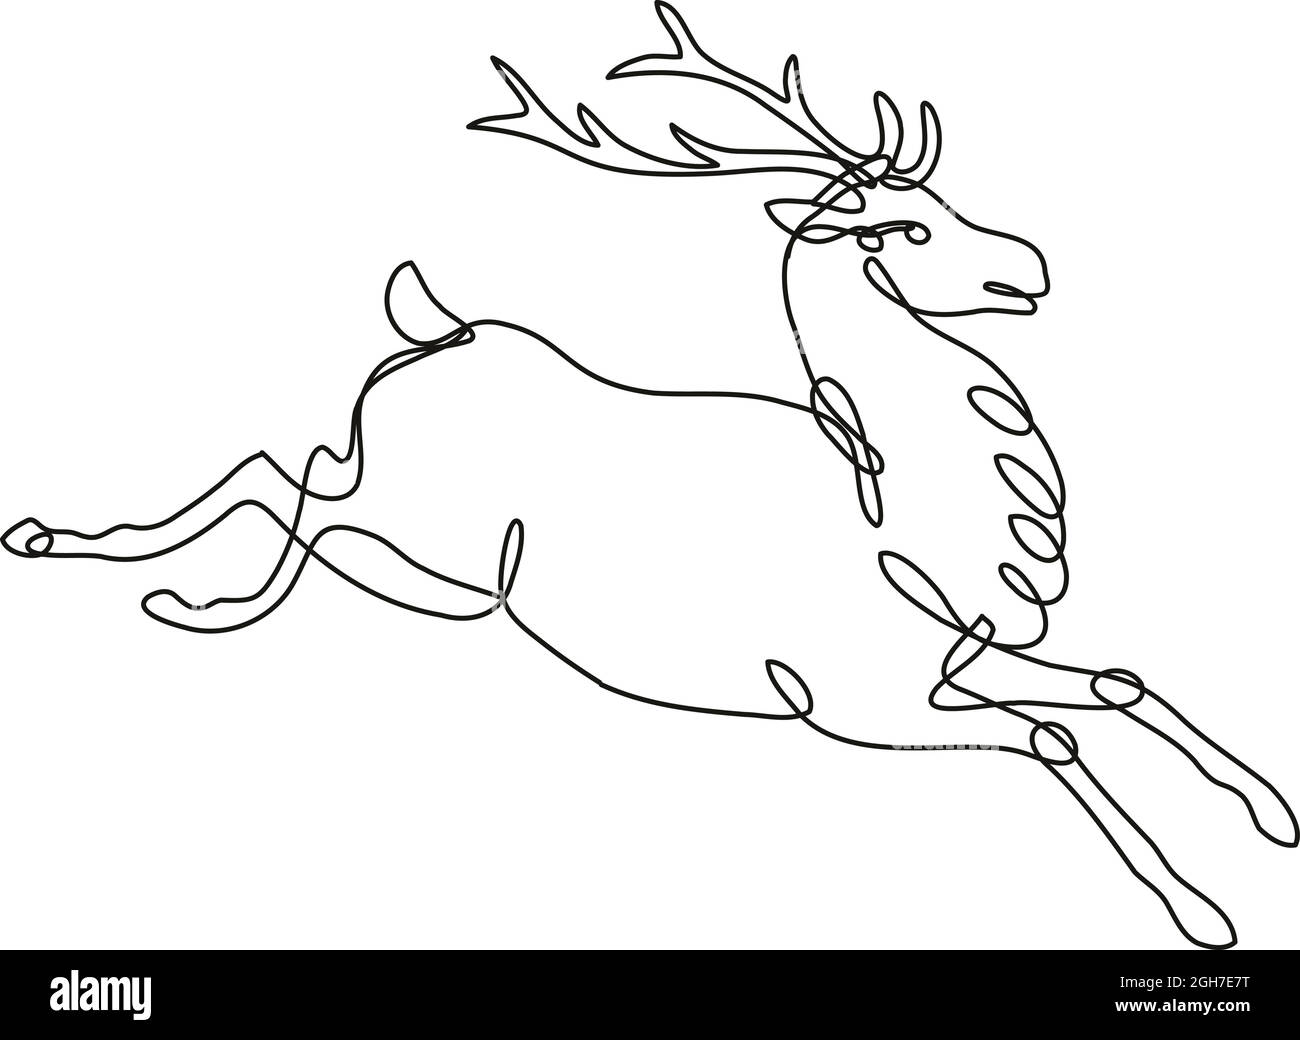 Illustrazione di un disegno a linea continua di una vista laterale di un cervo rosso o di un buck jumping eseguita in una linea mono o in uno stile di doodle in bianco e nero su bac isolato Illustrazione Vettoriale